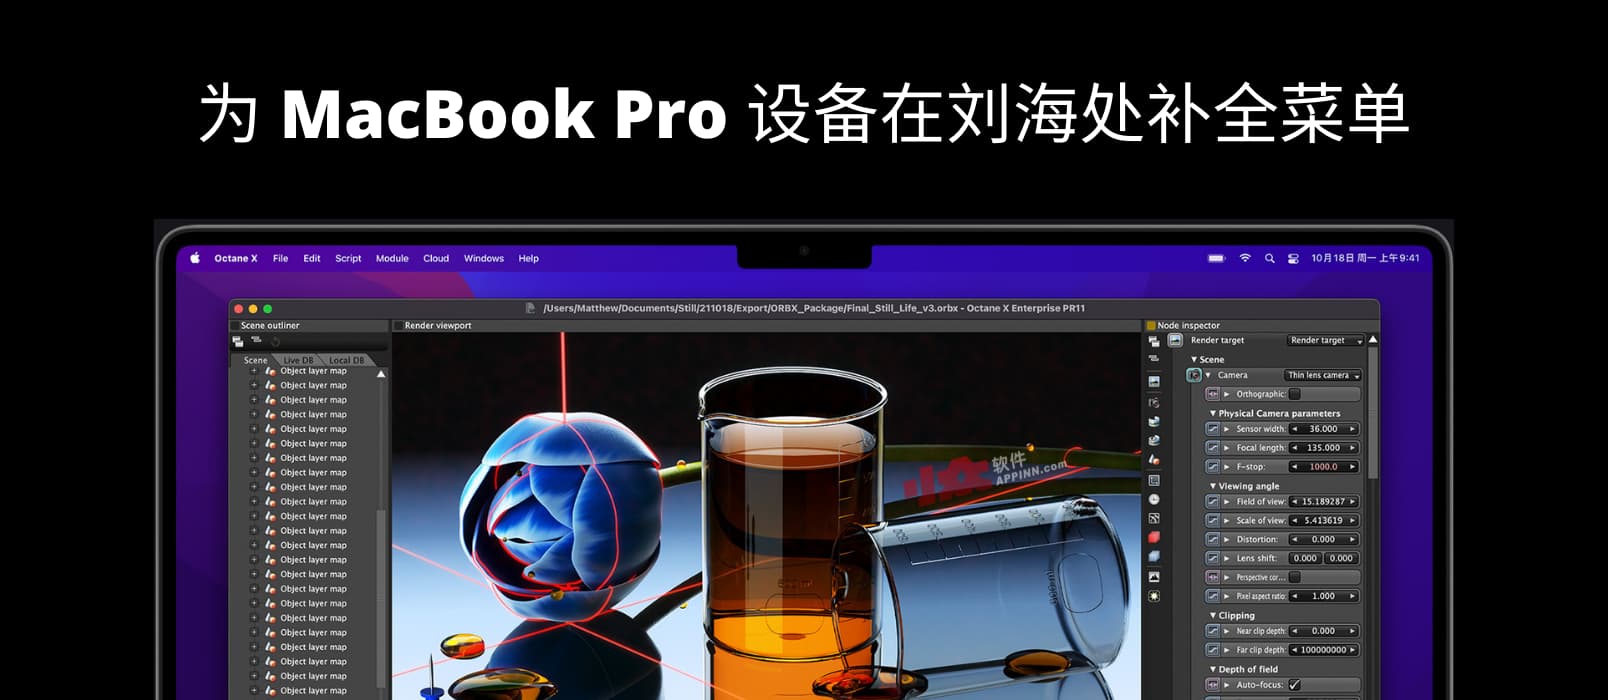 刘海儿补全计划 - 为 MacBook Pro 设备在刘海处补全菜单，一个被苹果拒绝的应用